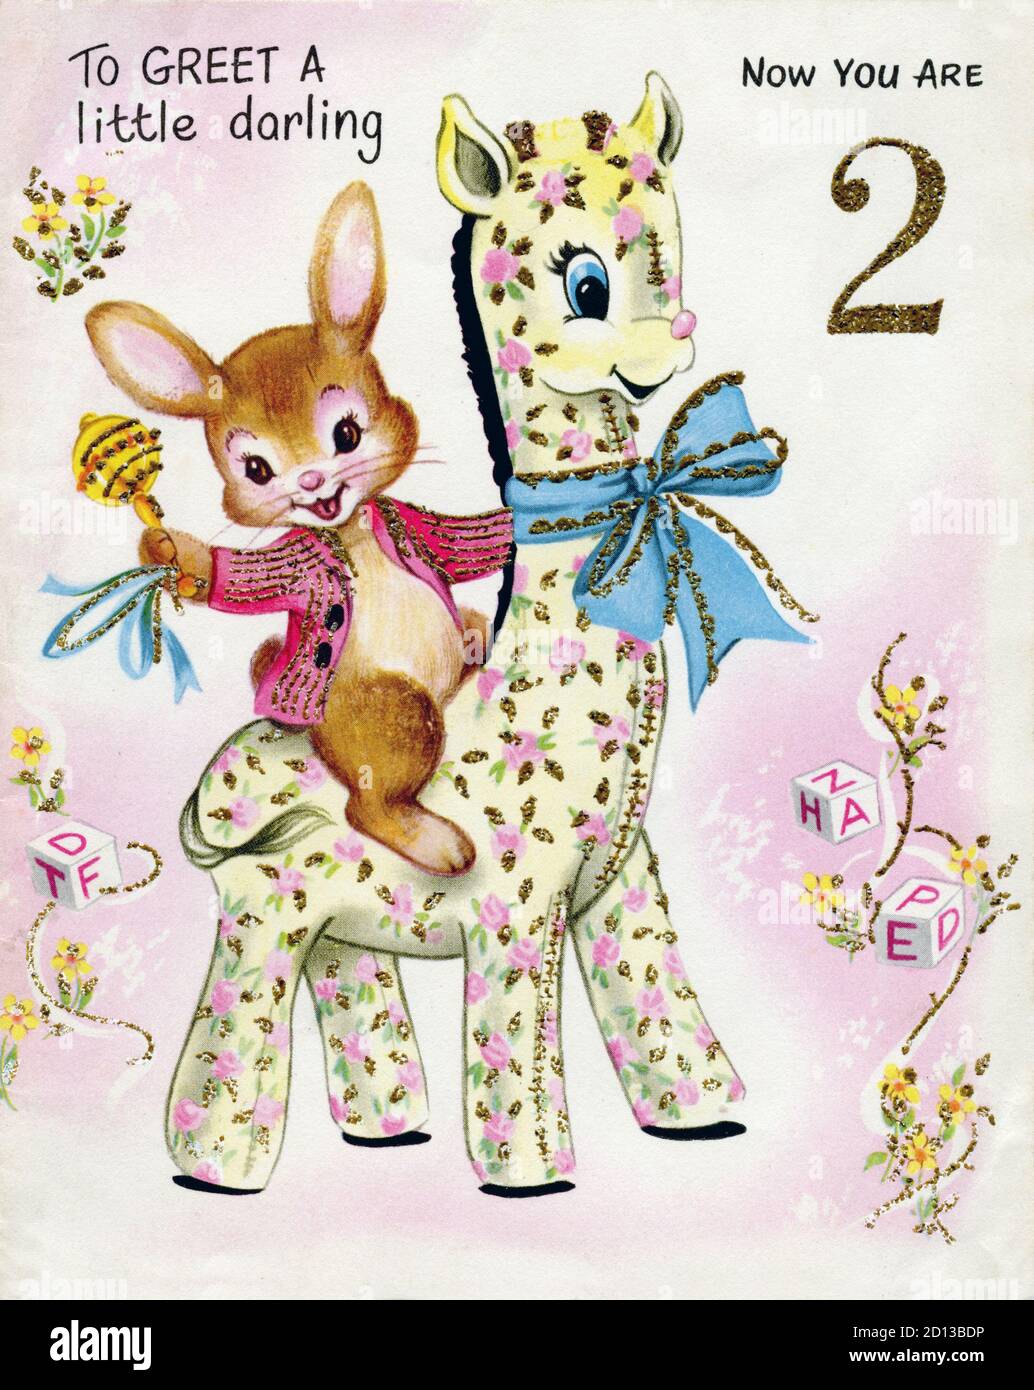 Tarjeta de cumpleaños vintage alrededor de 1964 con una ilustración de un lindo conejo conejito montando una jirafa de juguete rodeado de flores Bloques de juguete con el mensaje de saludar un poco de cariño Ahora tienes 2 impresos por Academy Cards Foto de stock